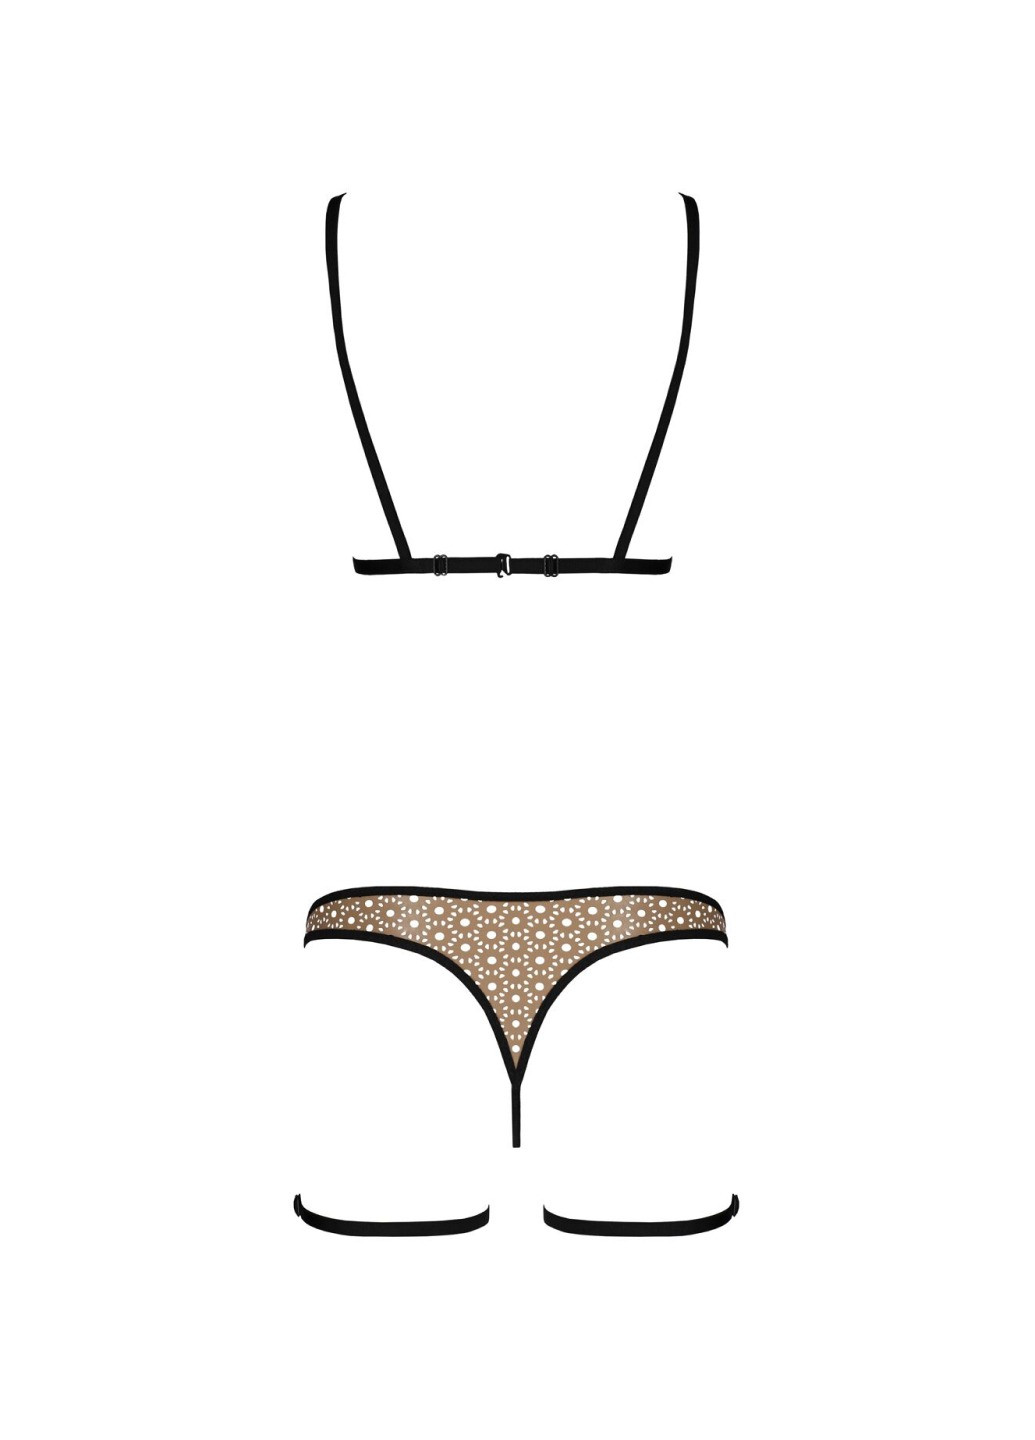 Прозорий демісезонний еротичний комплект спідньої білизни gabi set l/xl beige, трусики з гартерами Passion